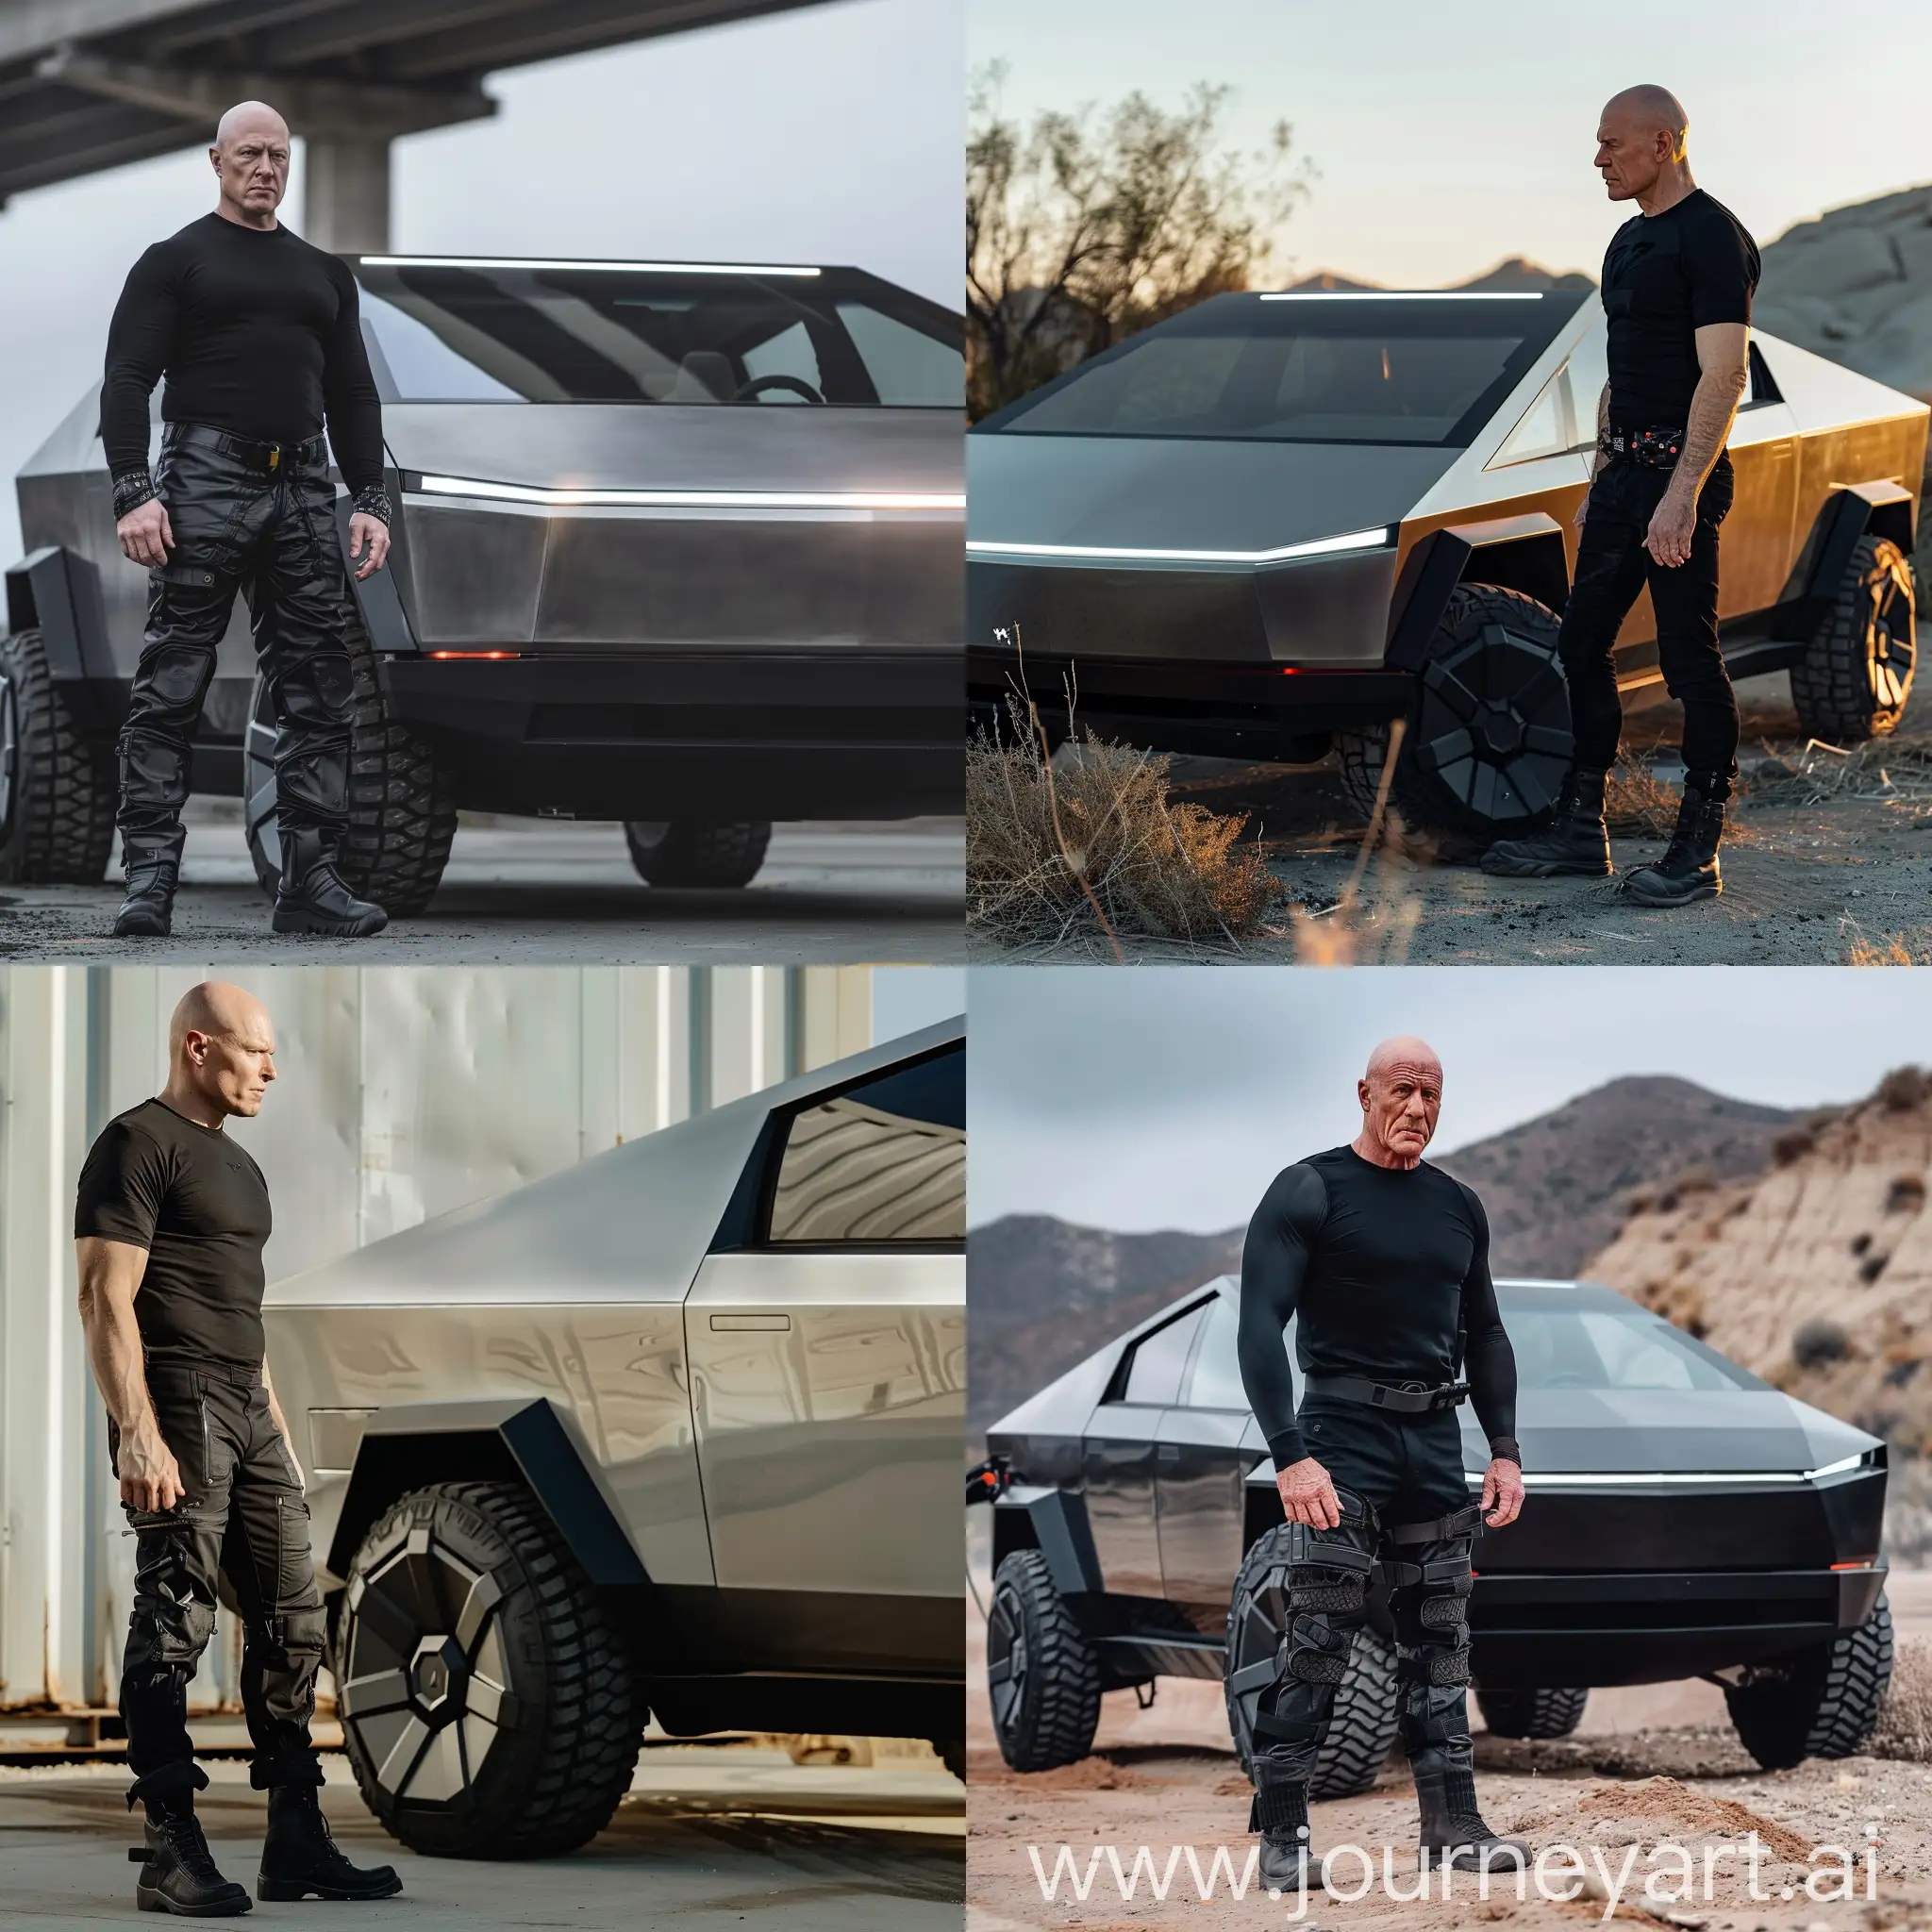 Лысый мужчина, в черной одежде, накаченный, стоит возле Tesla CyberTruck, супер детализация, гипер реализм, 8к, острый фокус